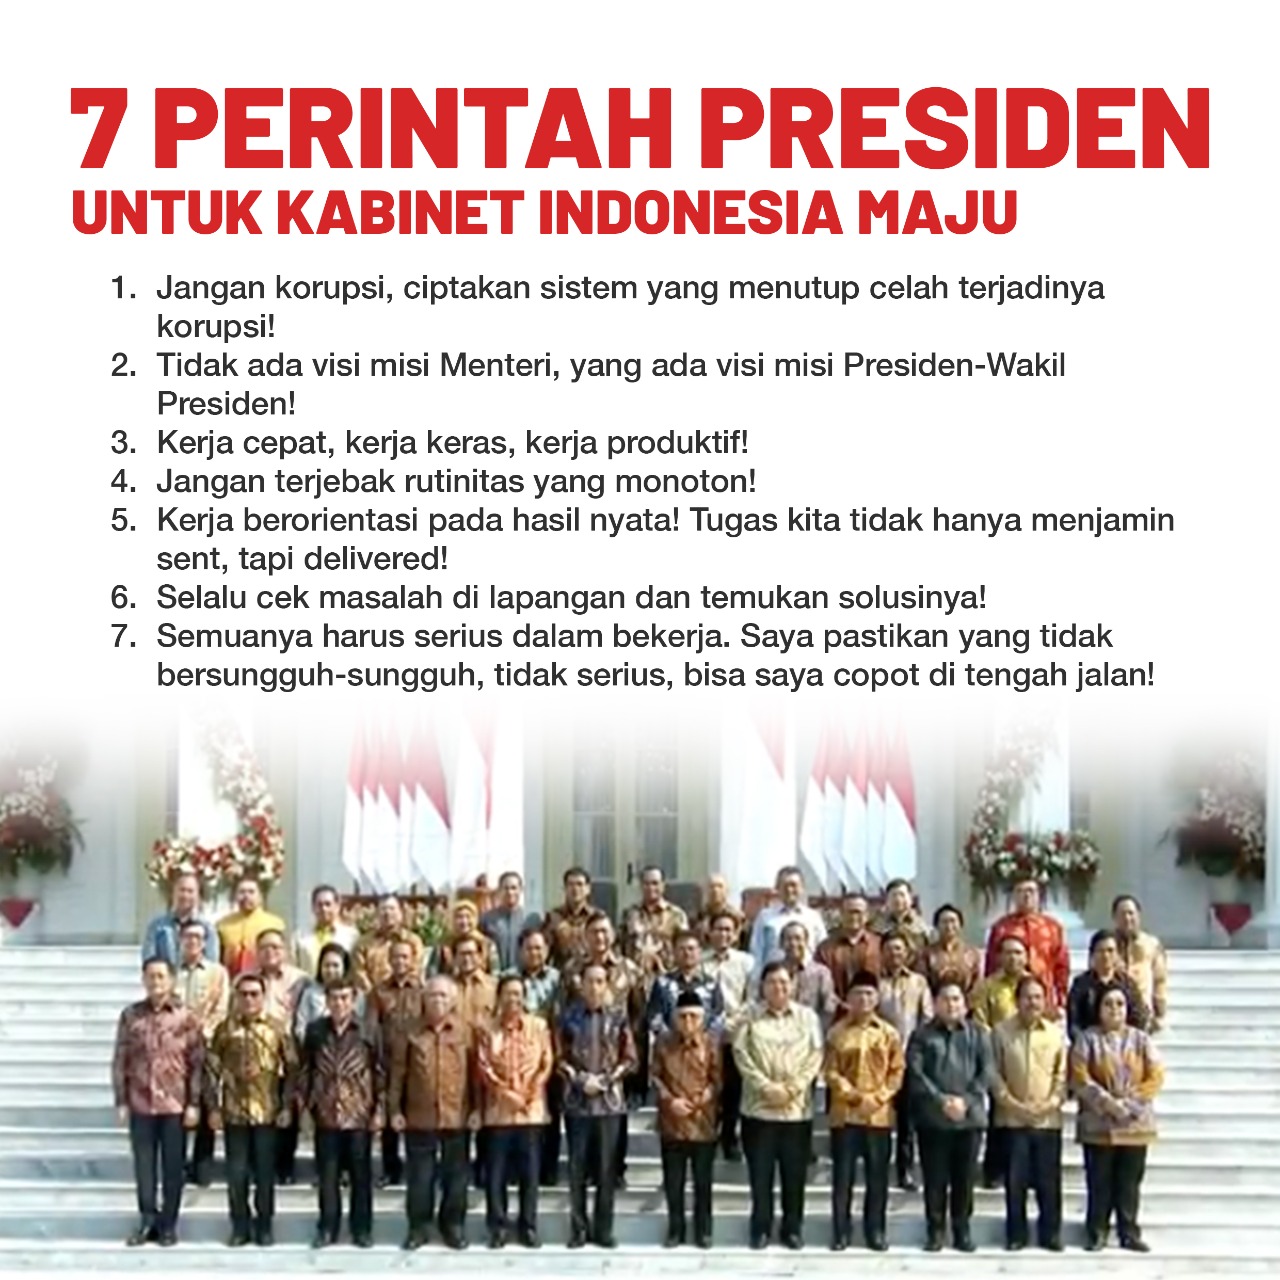 You are currently viewing 7 Perintah Presiden untuk Kabinet Indonesia Maju